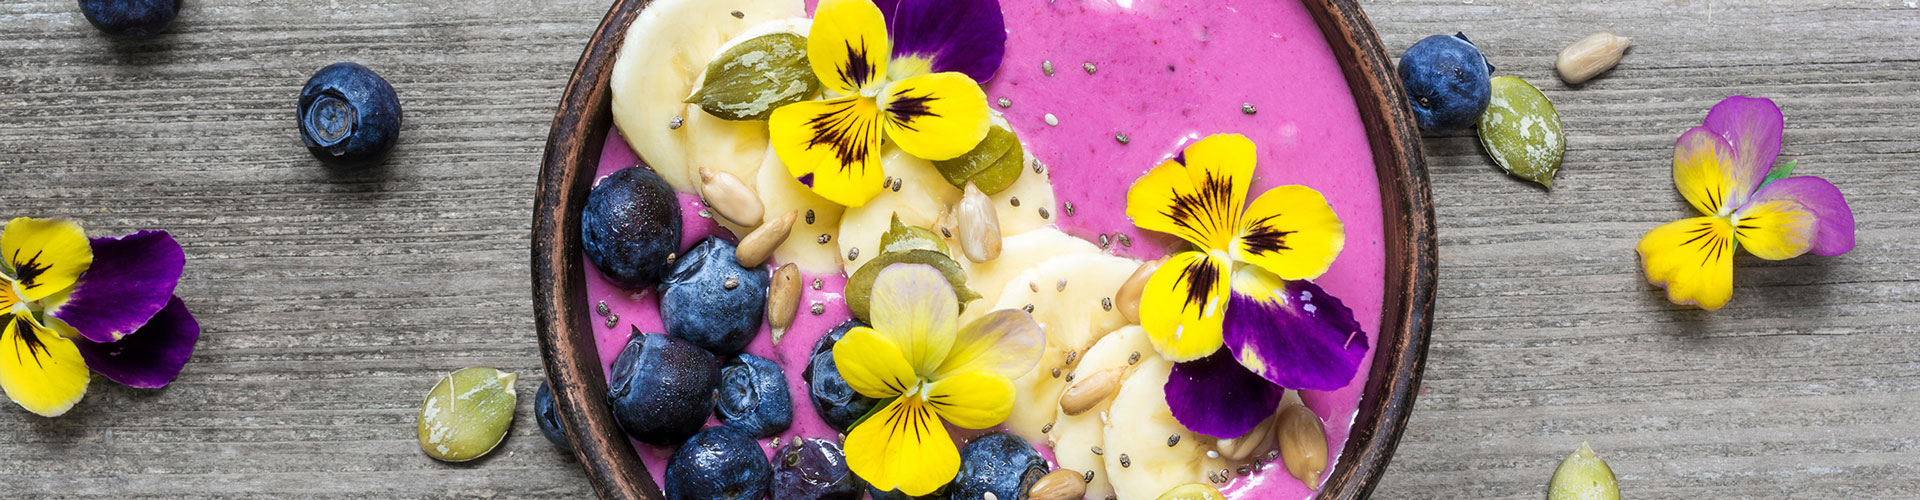 9 keer snoepen van je eigen eetbare bloemen | Stek Magazine